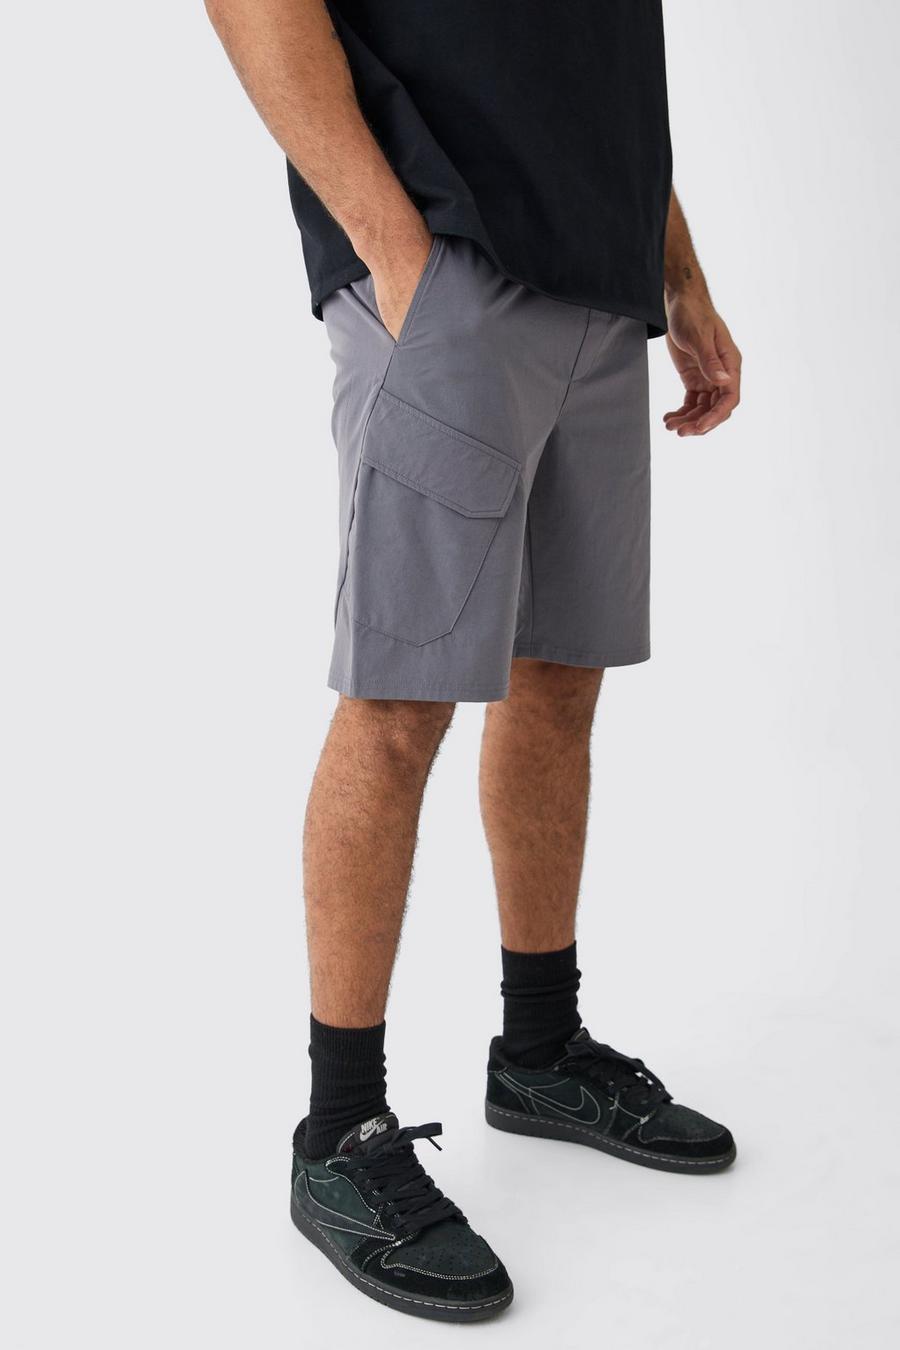 Pantalón corto elástico cómodo ligero, Charcoal image number 1